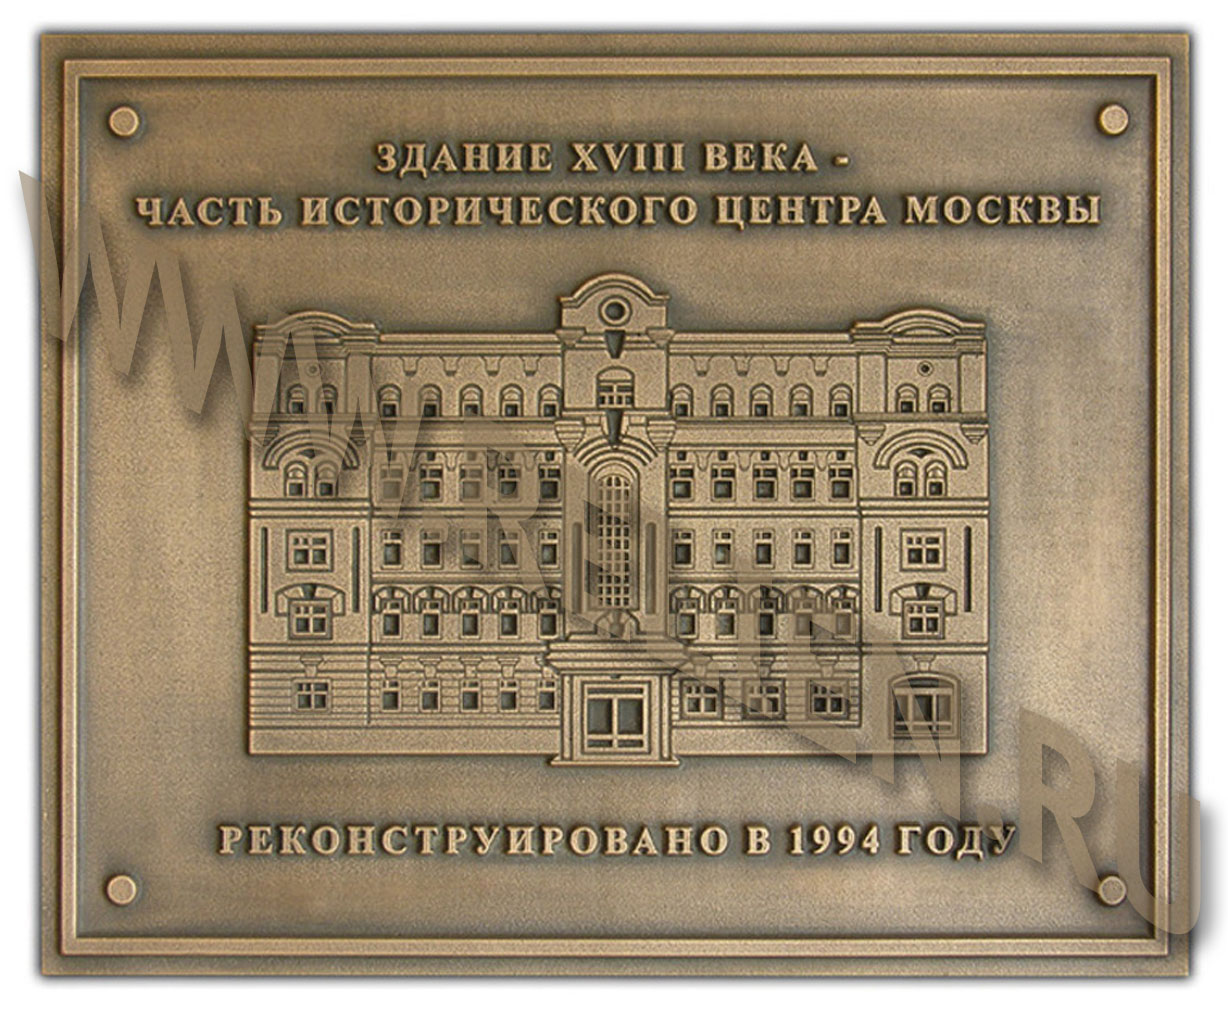 Бронзовая мемориальная доска с выпуклыми буквами и барельефом, изображенного на ней исторического здания 18-го века в центре Москвы. Охранная объемная фасадная вывеска изготовлена по технологии художественного литья.